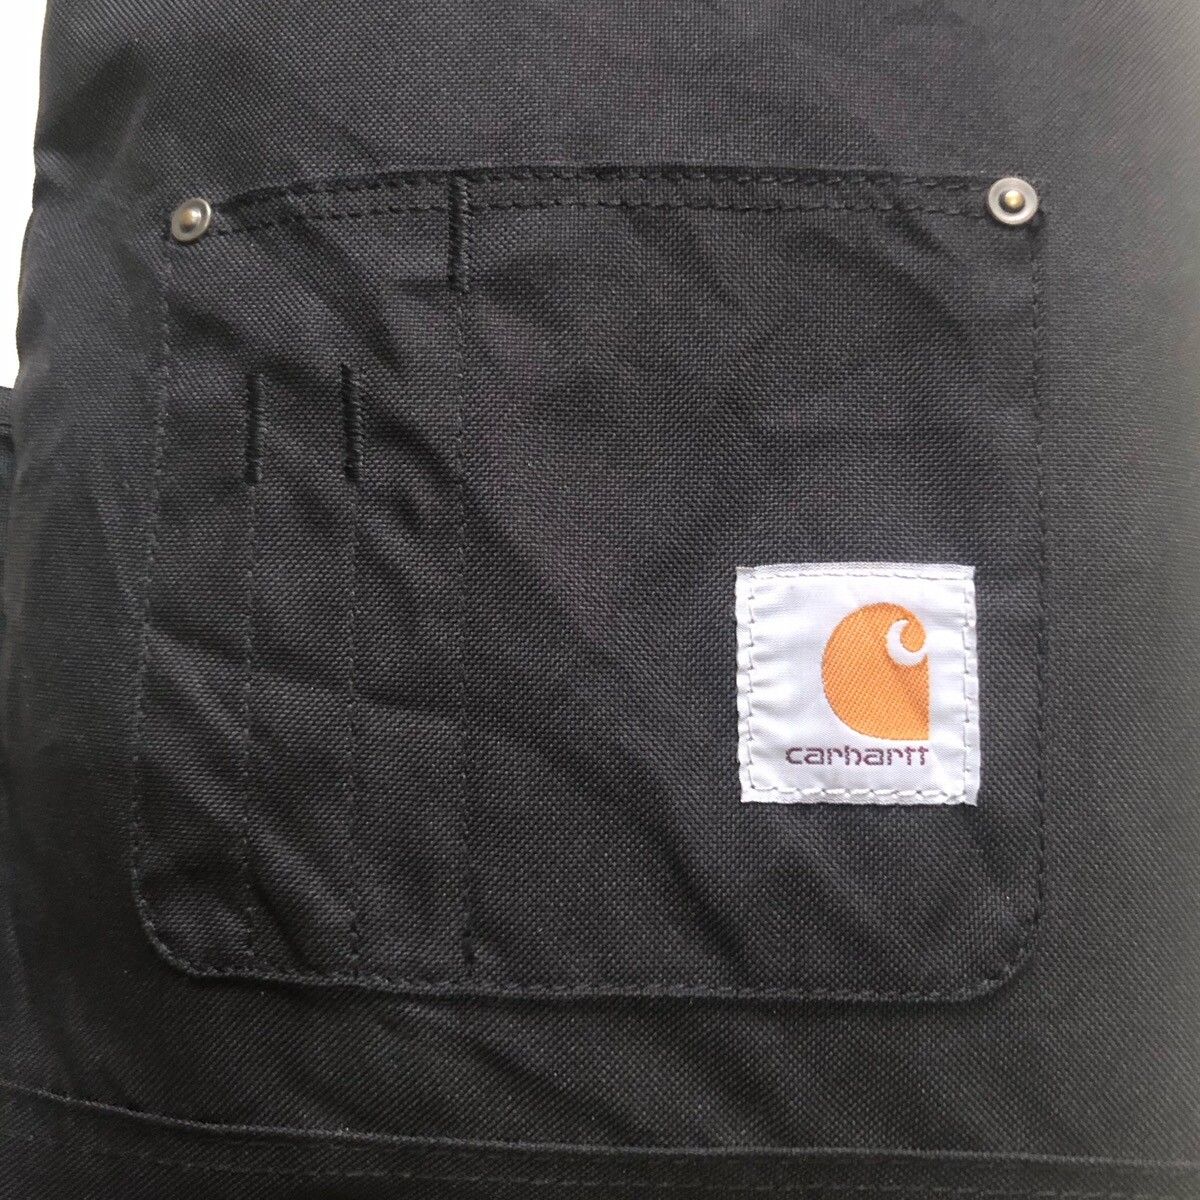 Carhart Wip Backpack - 4